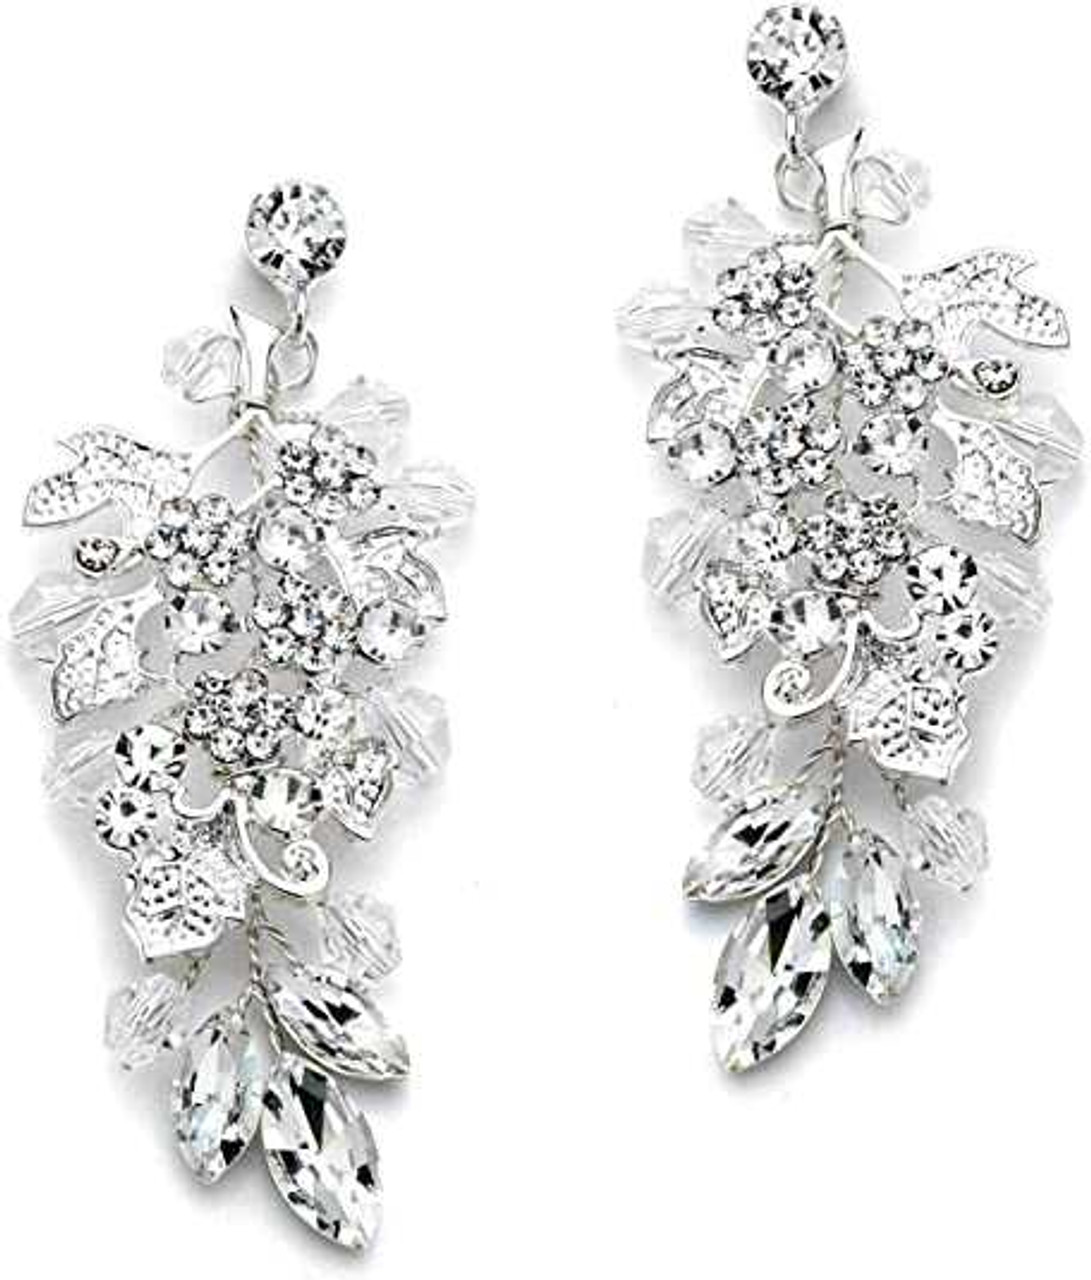 Rhinestone Crystal Dangle Earrings Statement Drop Earrings Brides Silver  Love Heart Stud Earrings for Women Girls Heavy